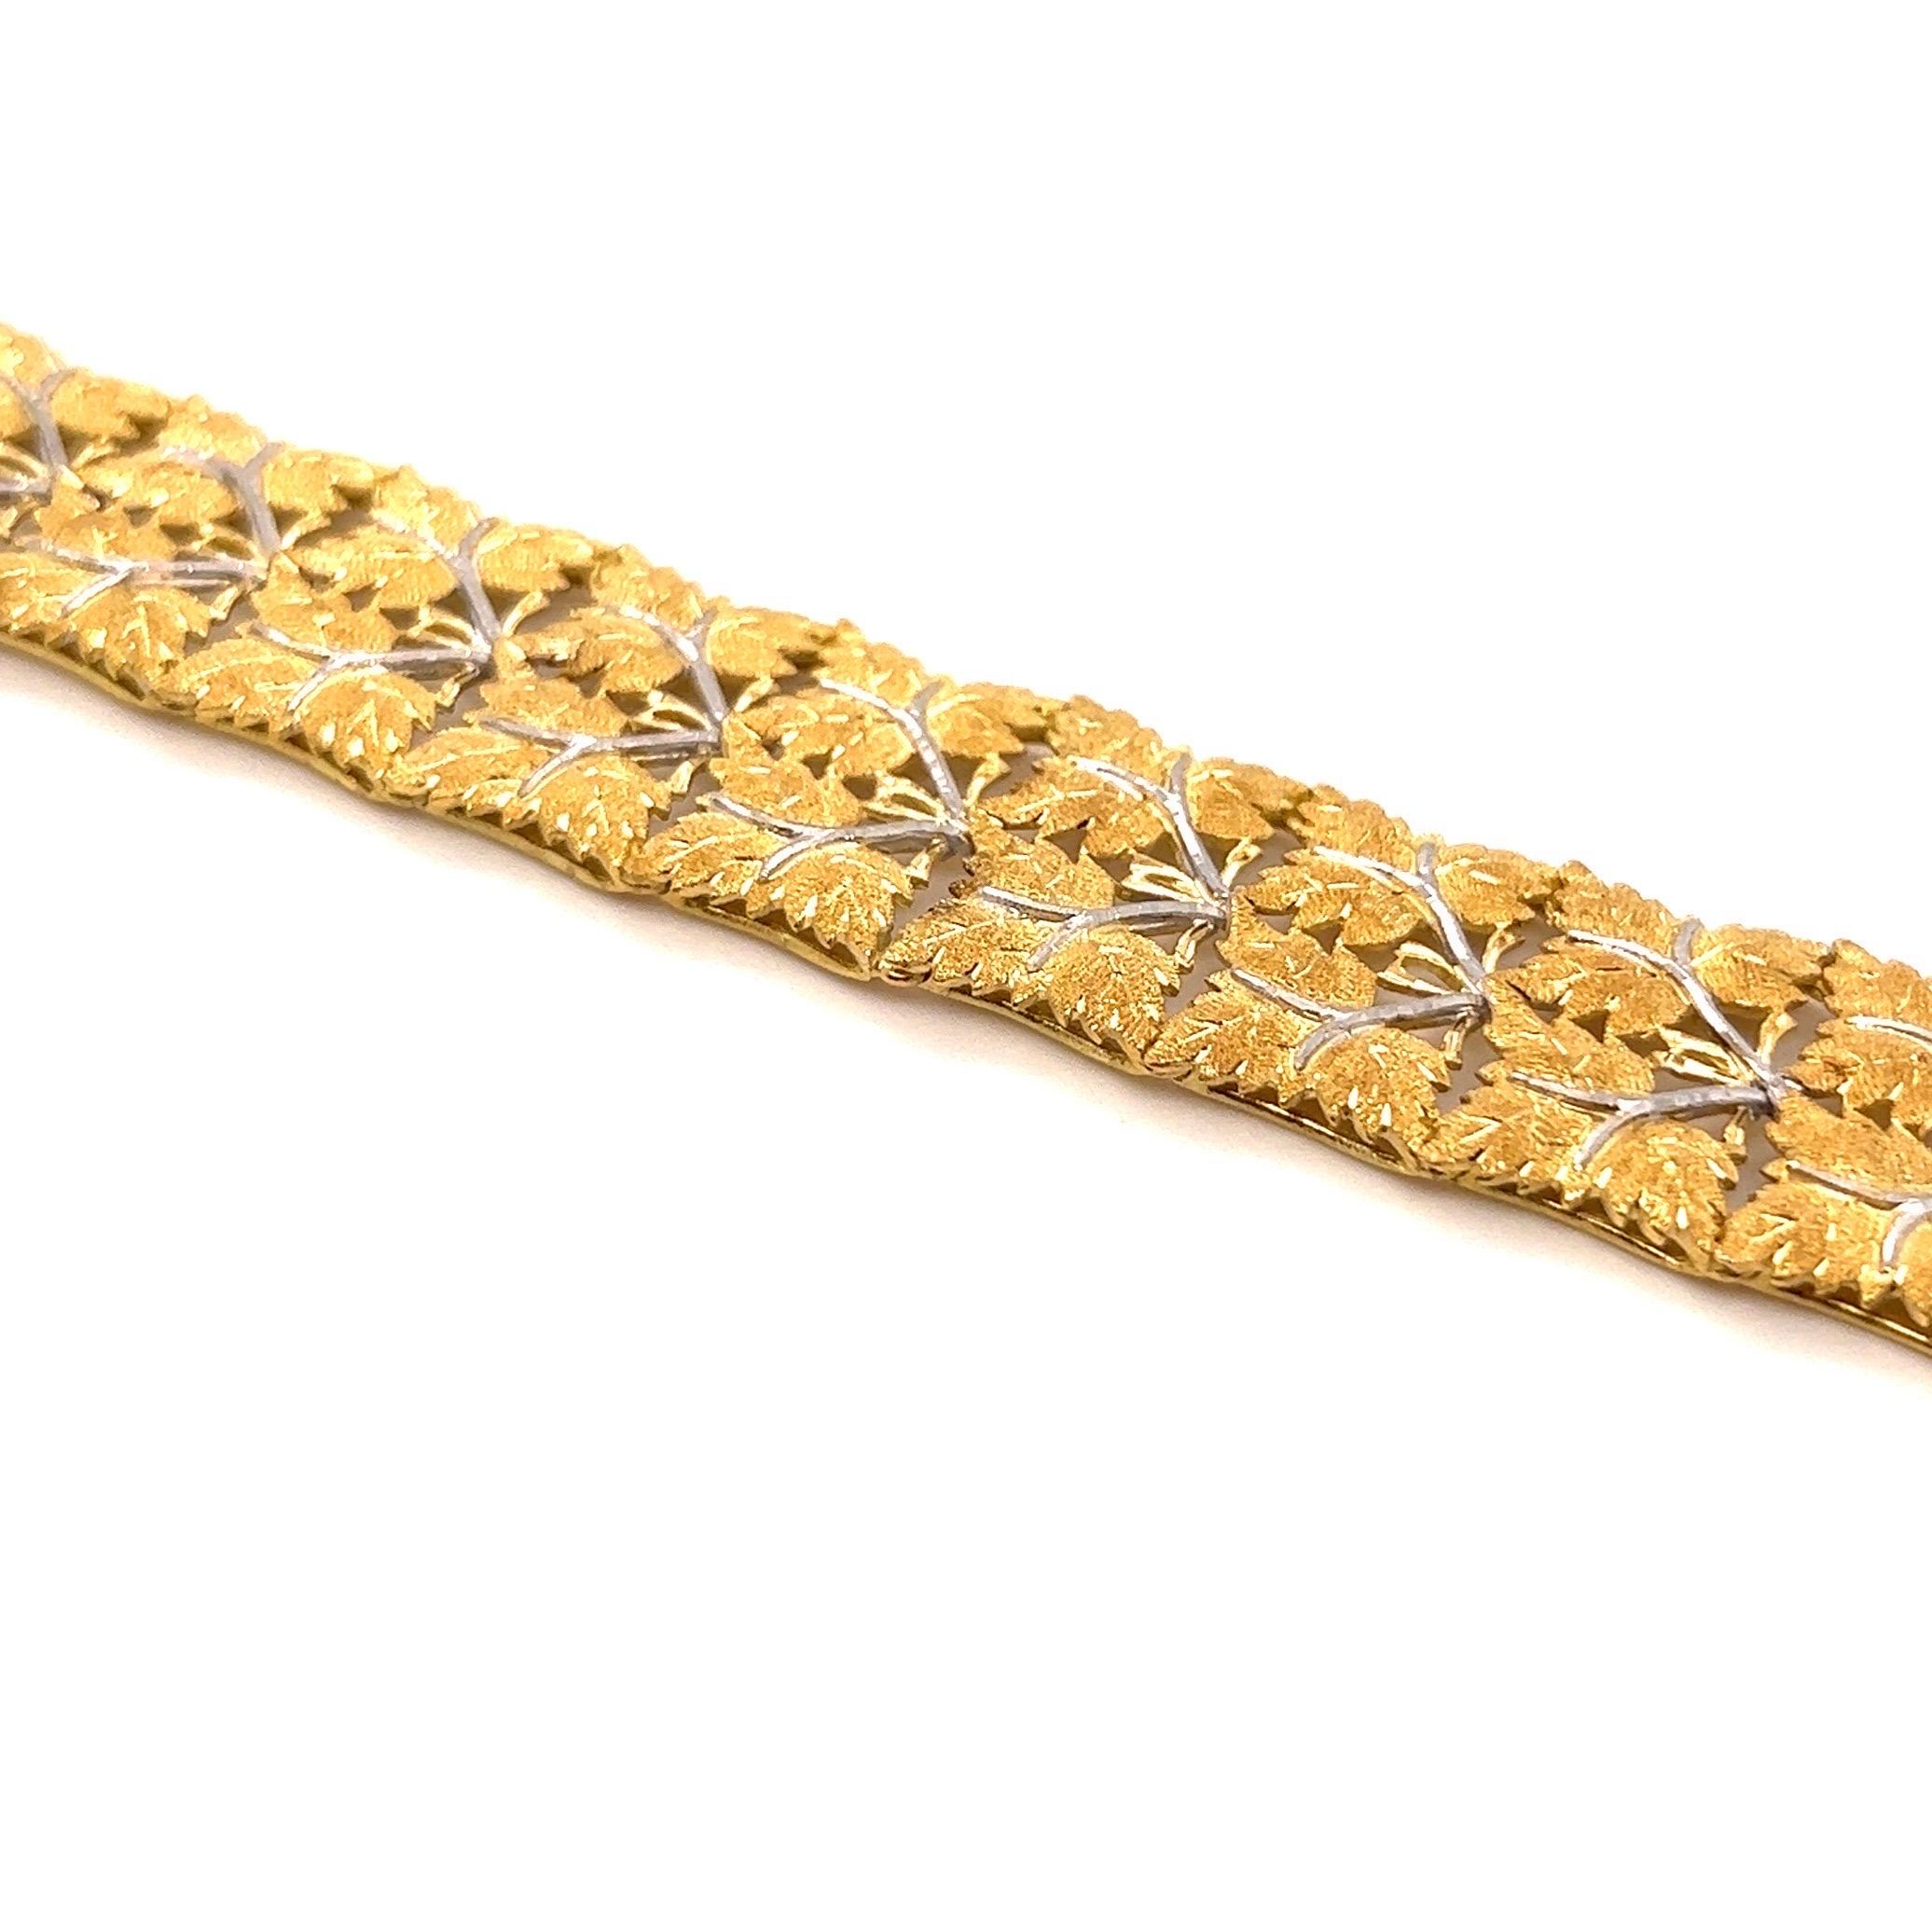 Zartes und elegantes Armband aus 18 Karat Gelb- und Weißgold von Mario Buccellati, 1950er Jahre.

Dieses filigrane Gliederarmband aus 18-karätigem Gold wurde in meisterhafter Handarbeit aus fein strukturierten, mattierten Traubenblättern aus